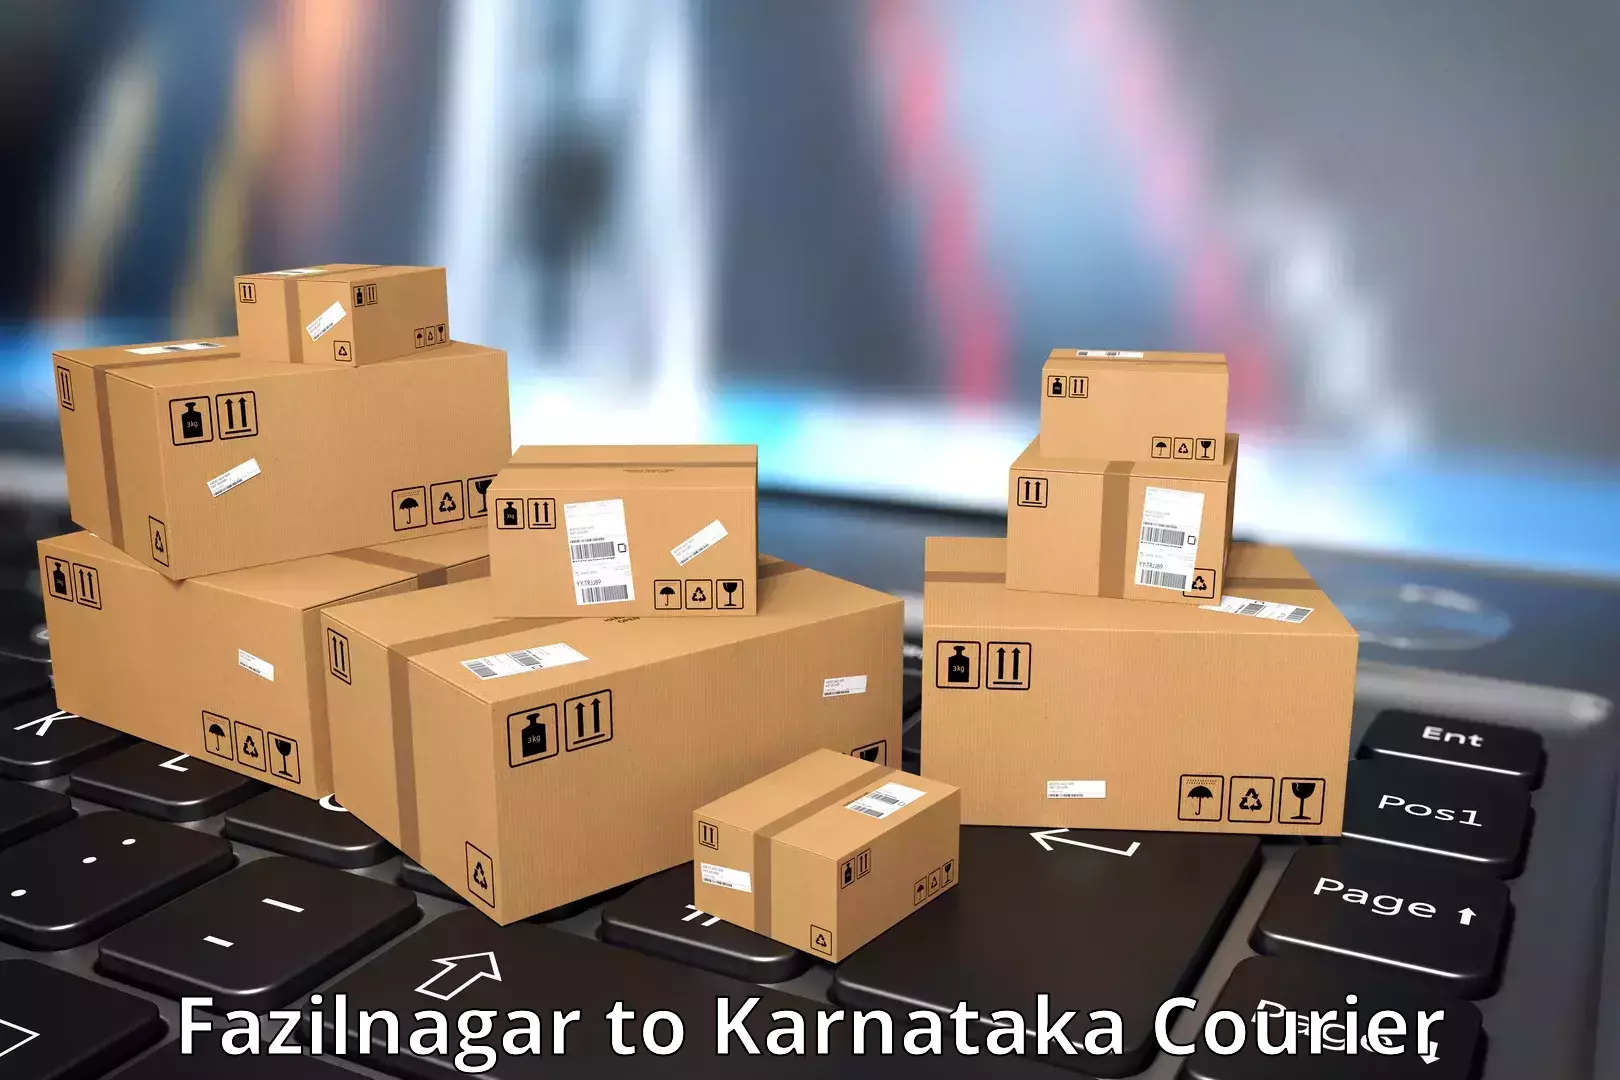 Logistics service provider Fazilnagar to Srinivaspur